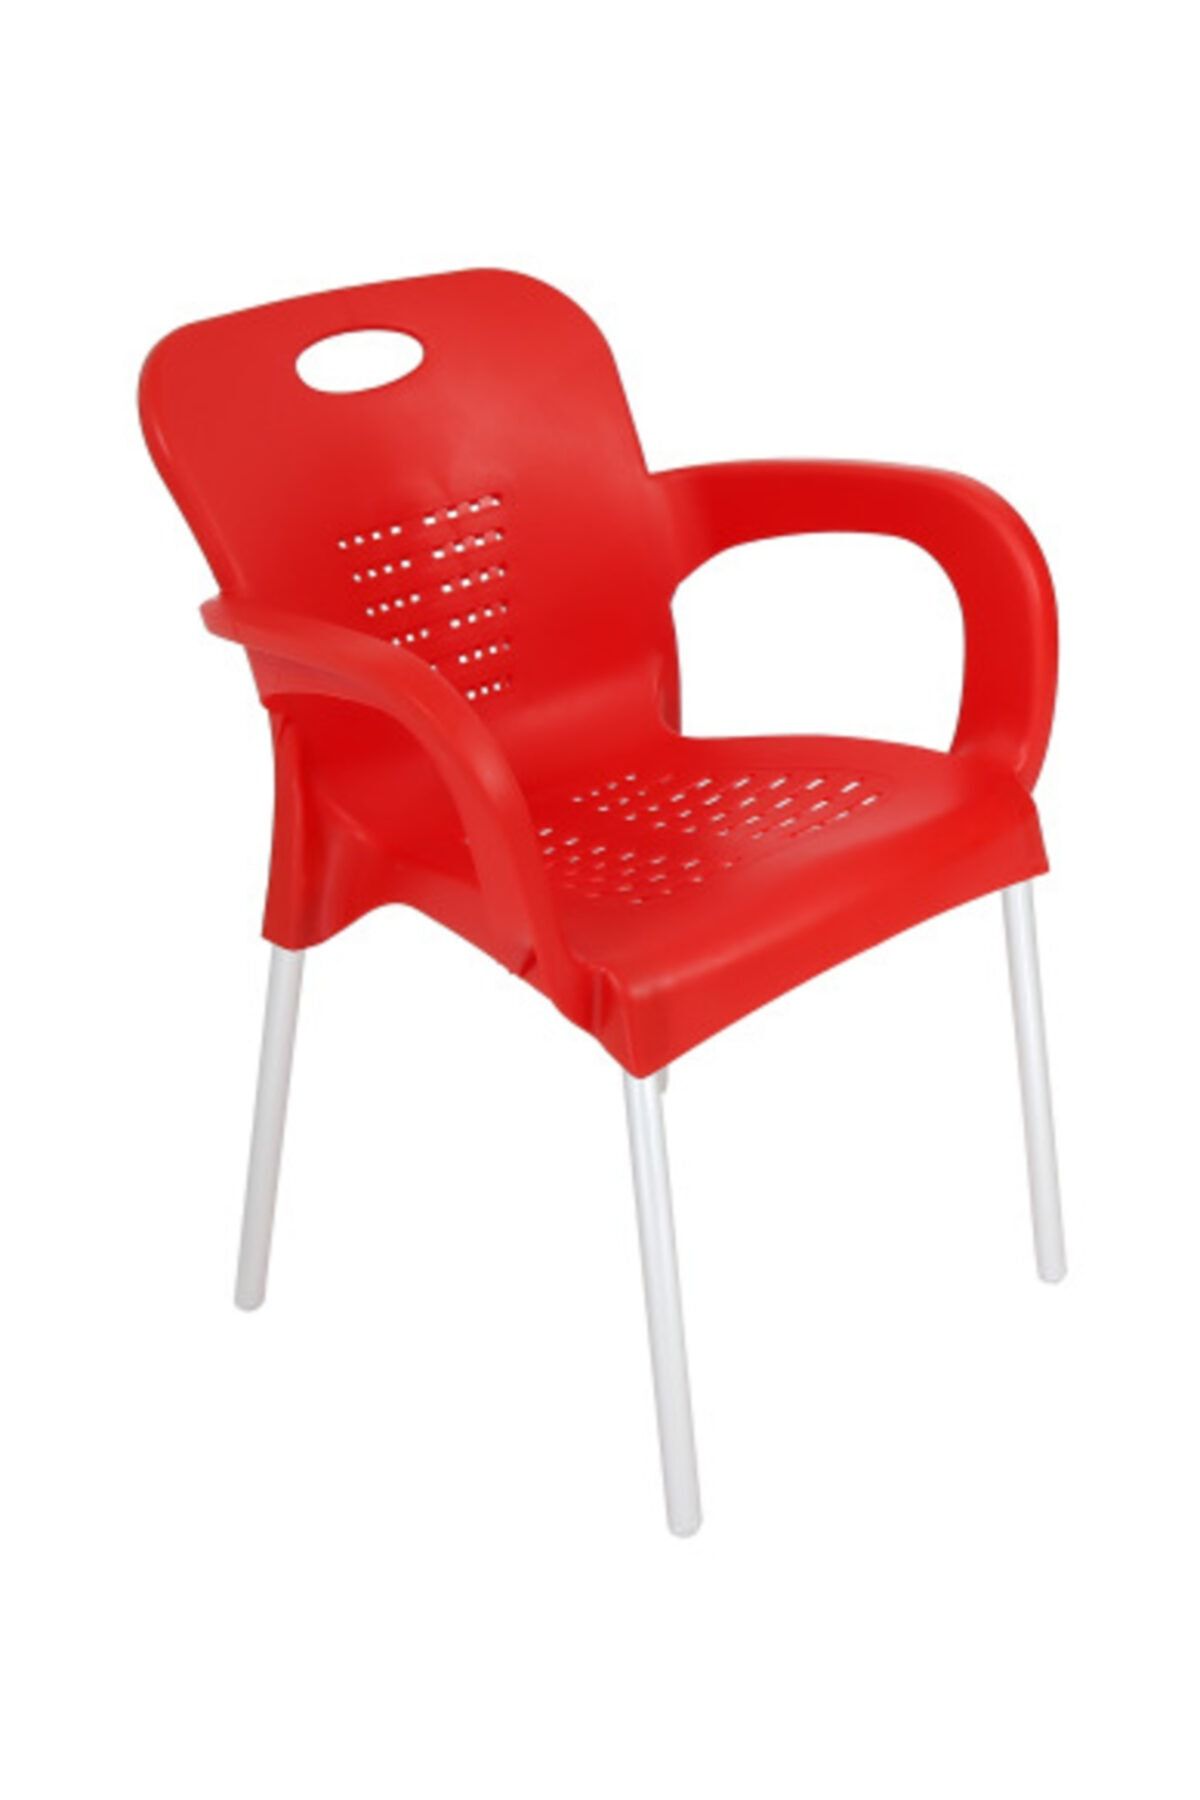 yılmaz masacılık Kırmızı  Nil Kollu Sandalye  1 Adet